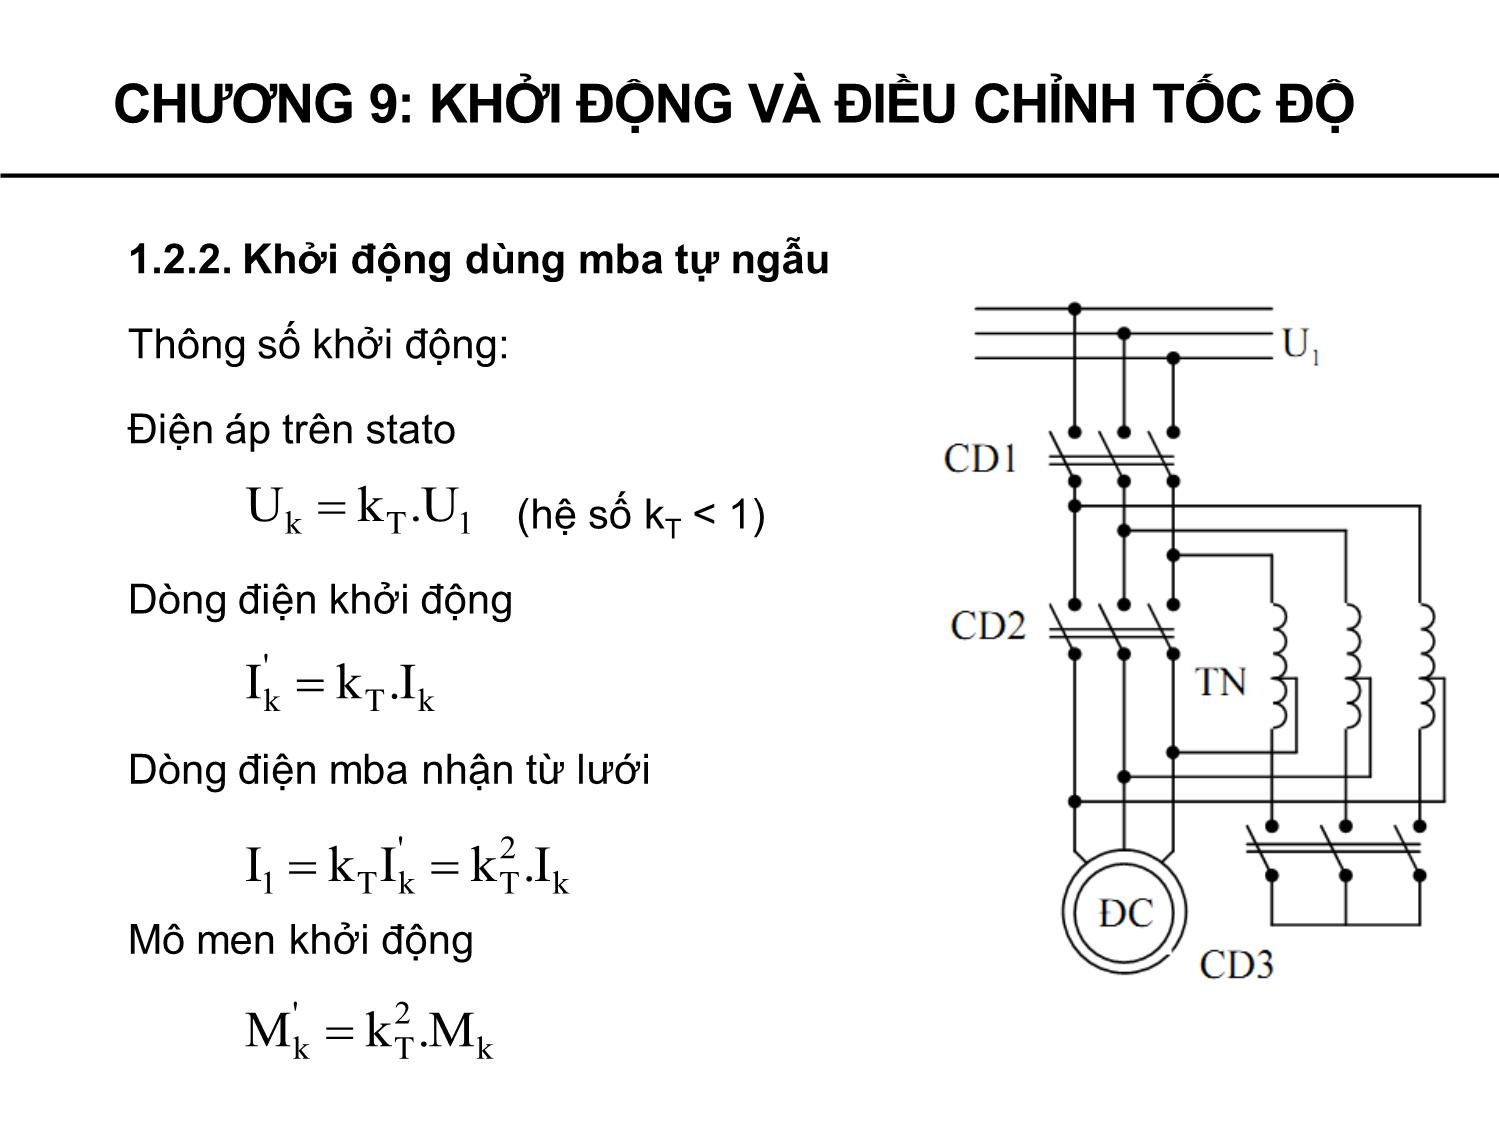 Bài giảng Máy điện - Chương 9: Khởi động và điều chỉnh tốc độ động cơ không đồng bộ - Phạm Khánh Tùng trang 10